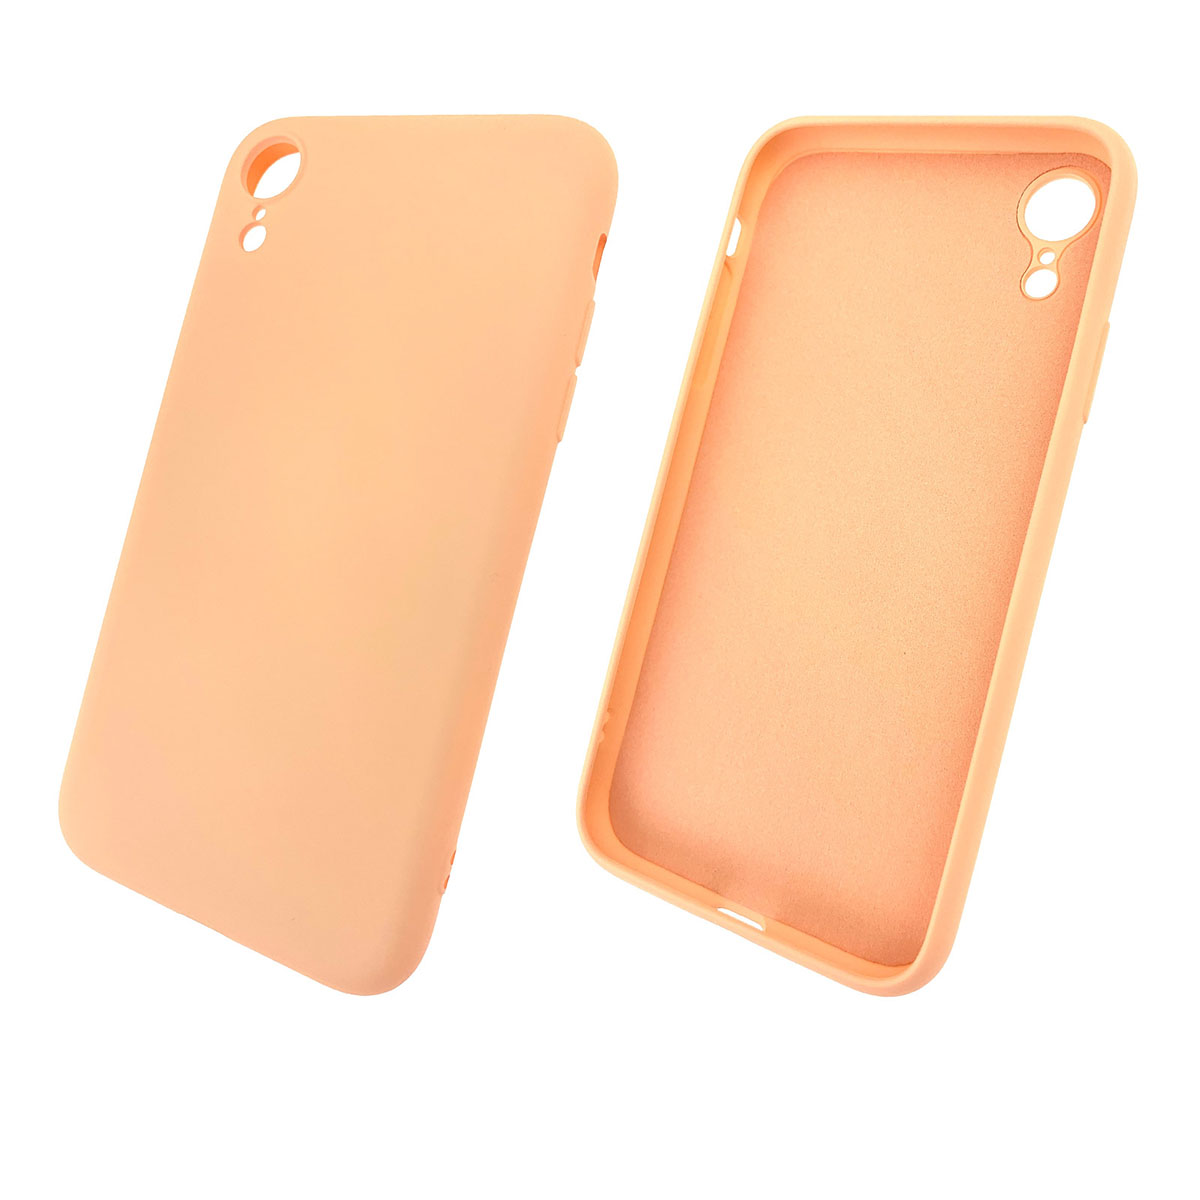 Чехол накладка для APPLE iPhone XR, силикон, цвет персиковый.